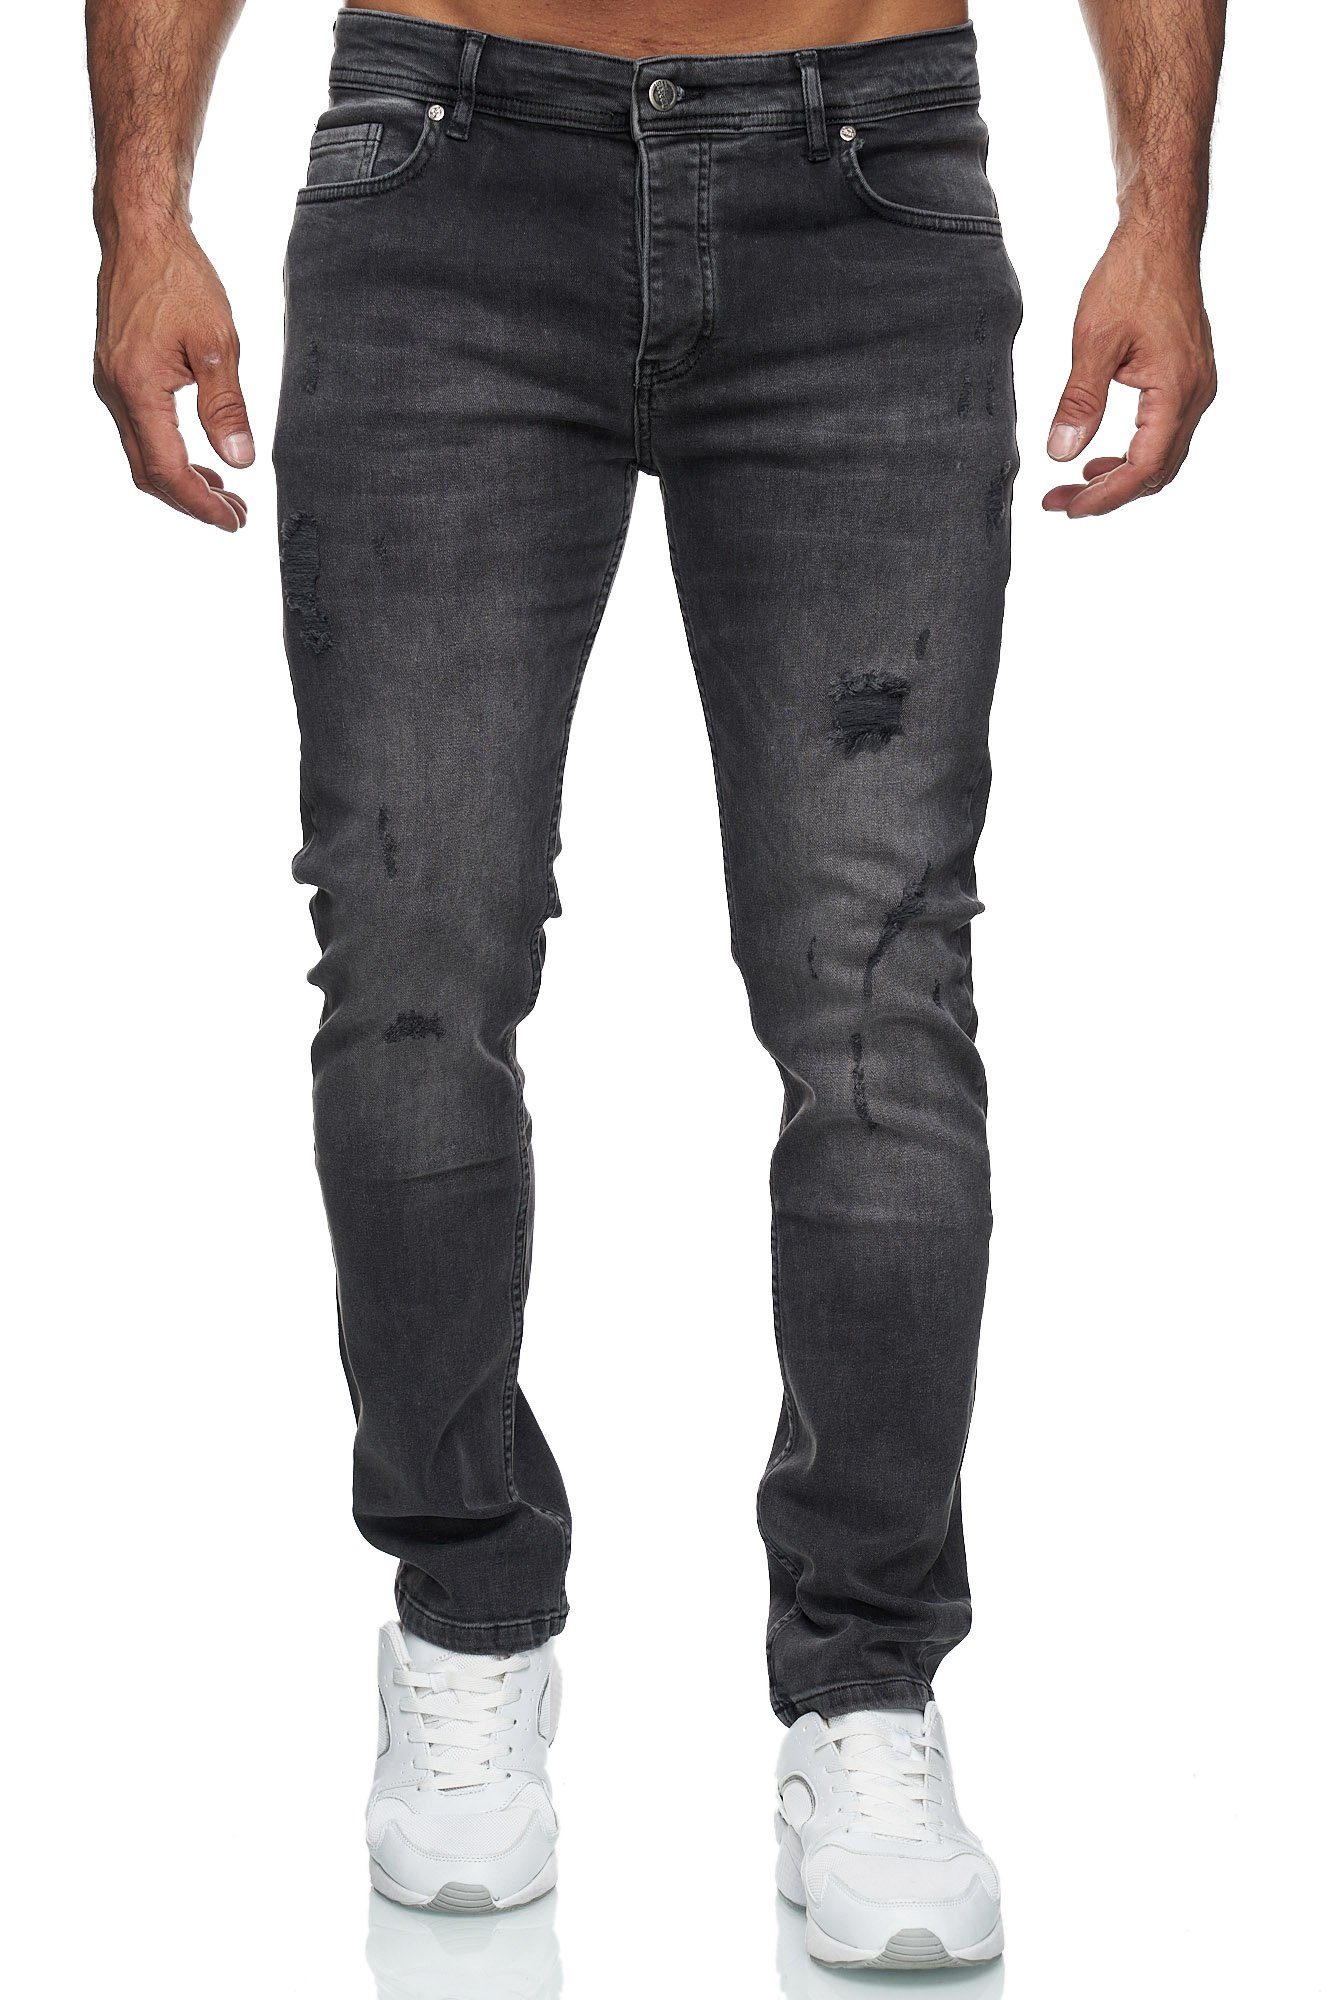 Reslad Destroyed-Jeans Reslad Jeans Herren Destroyed Slim Fit Herren-Hose Jeanshose Männer Destroyed Look Stretch Slim Fit Jeans schwarz